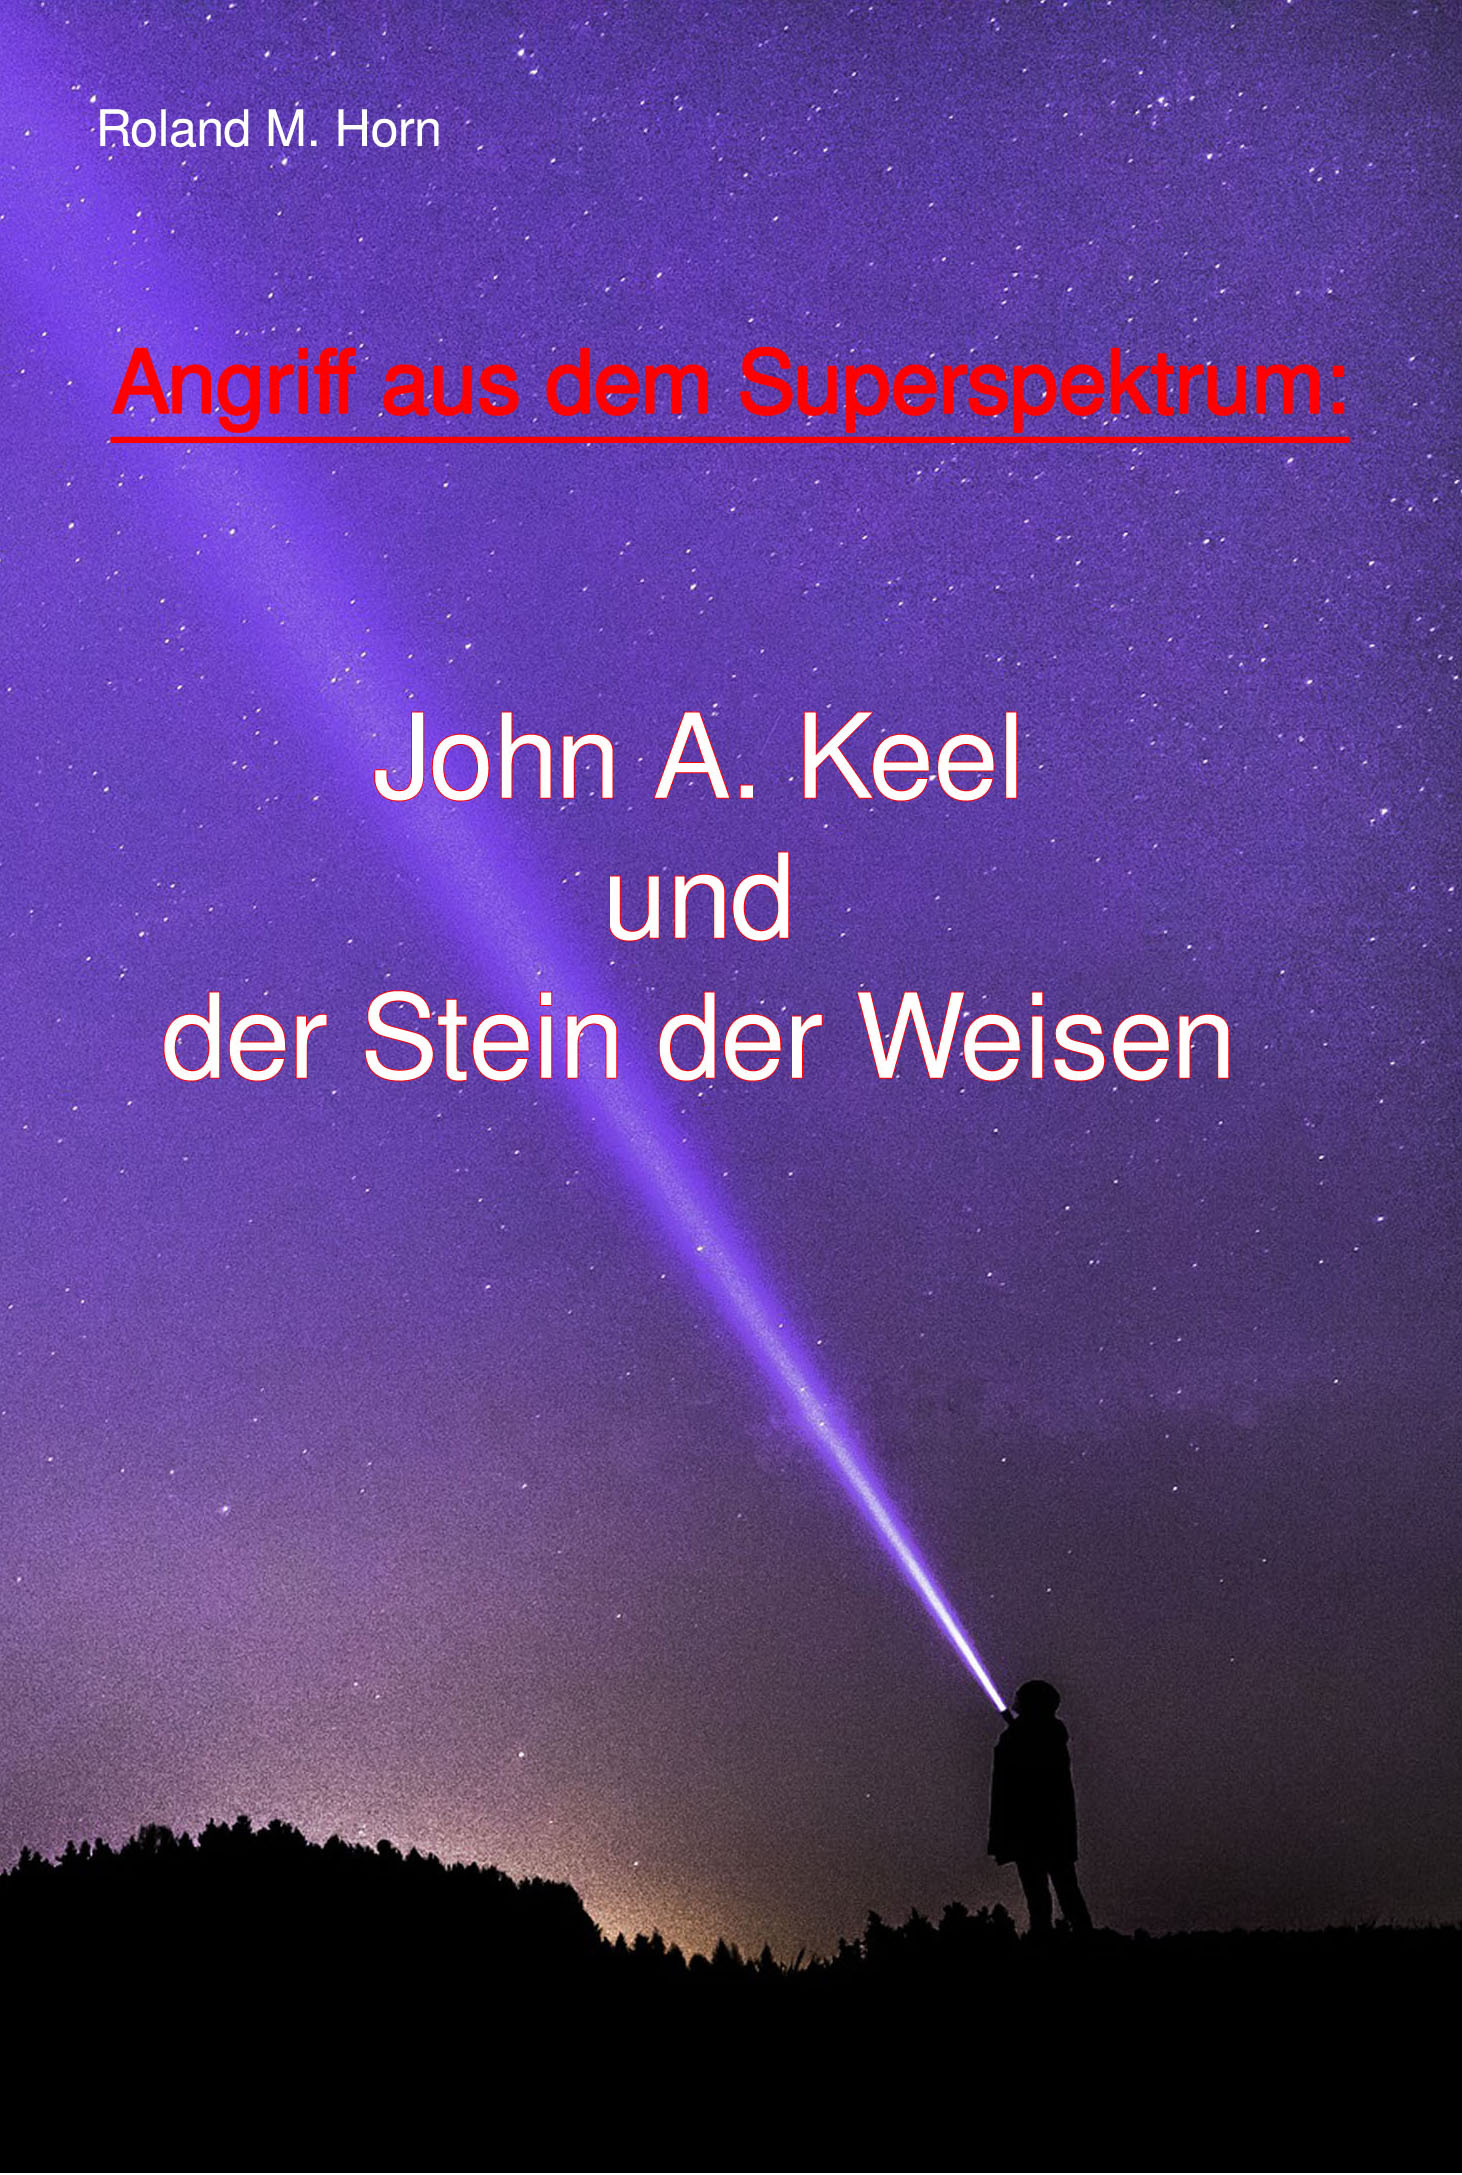 Roland M. Horn: Angriff aus dem Superspektrum: John A. Keel und der Stein der Weisen (Cover)